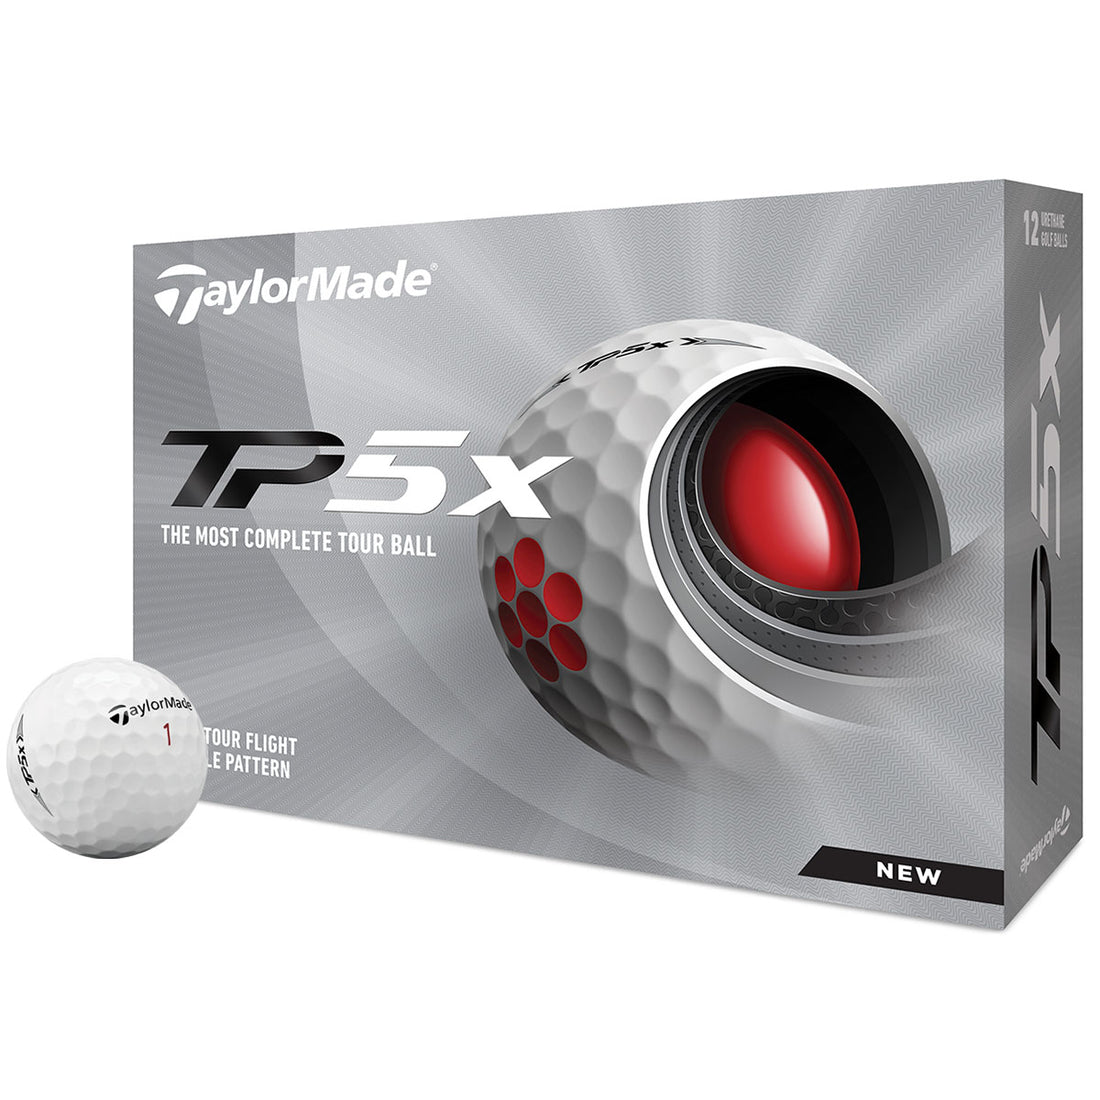 TP5x Balls (Dozen)